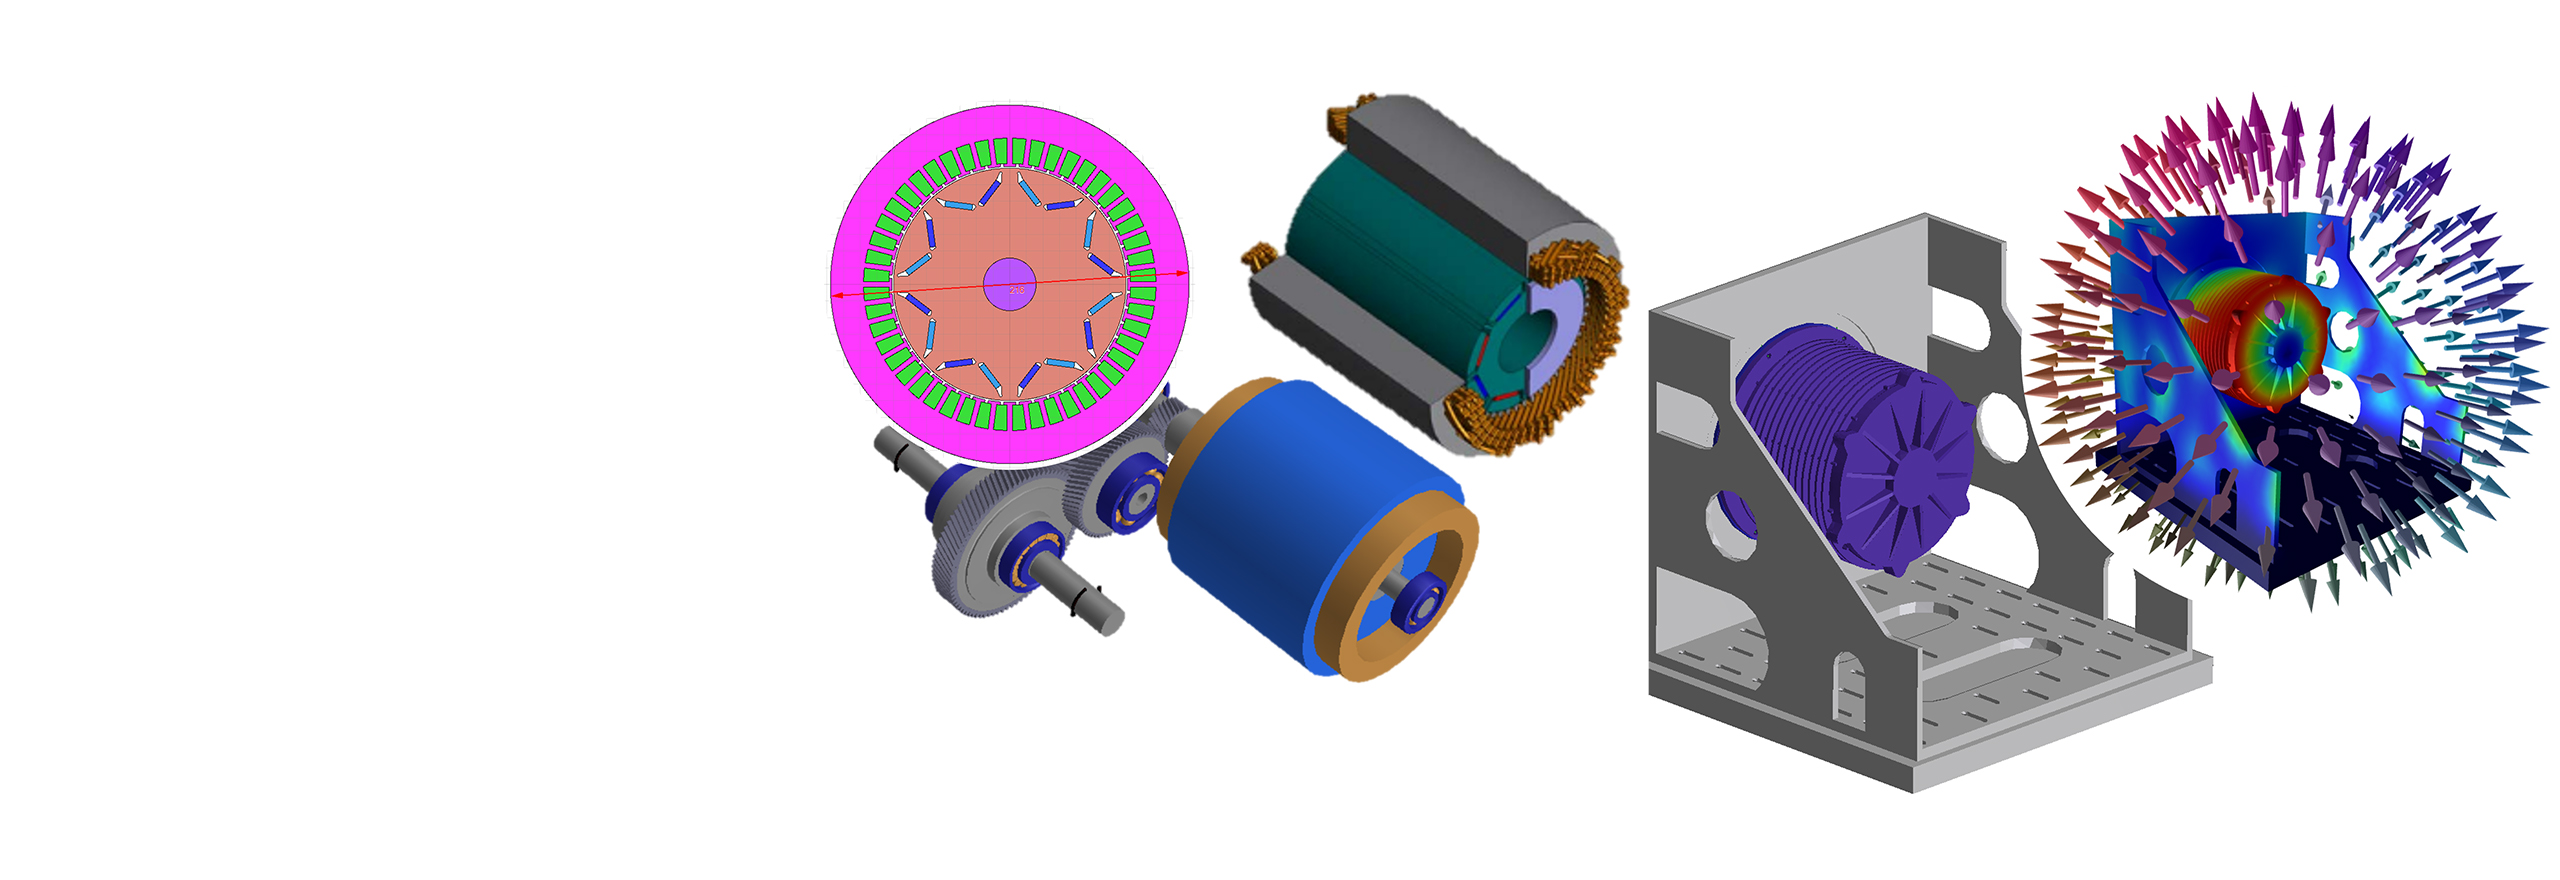 電磁解析、構造解析、音響解析における電気モーターを示す画像のコンパイル 